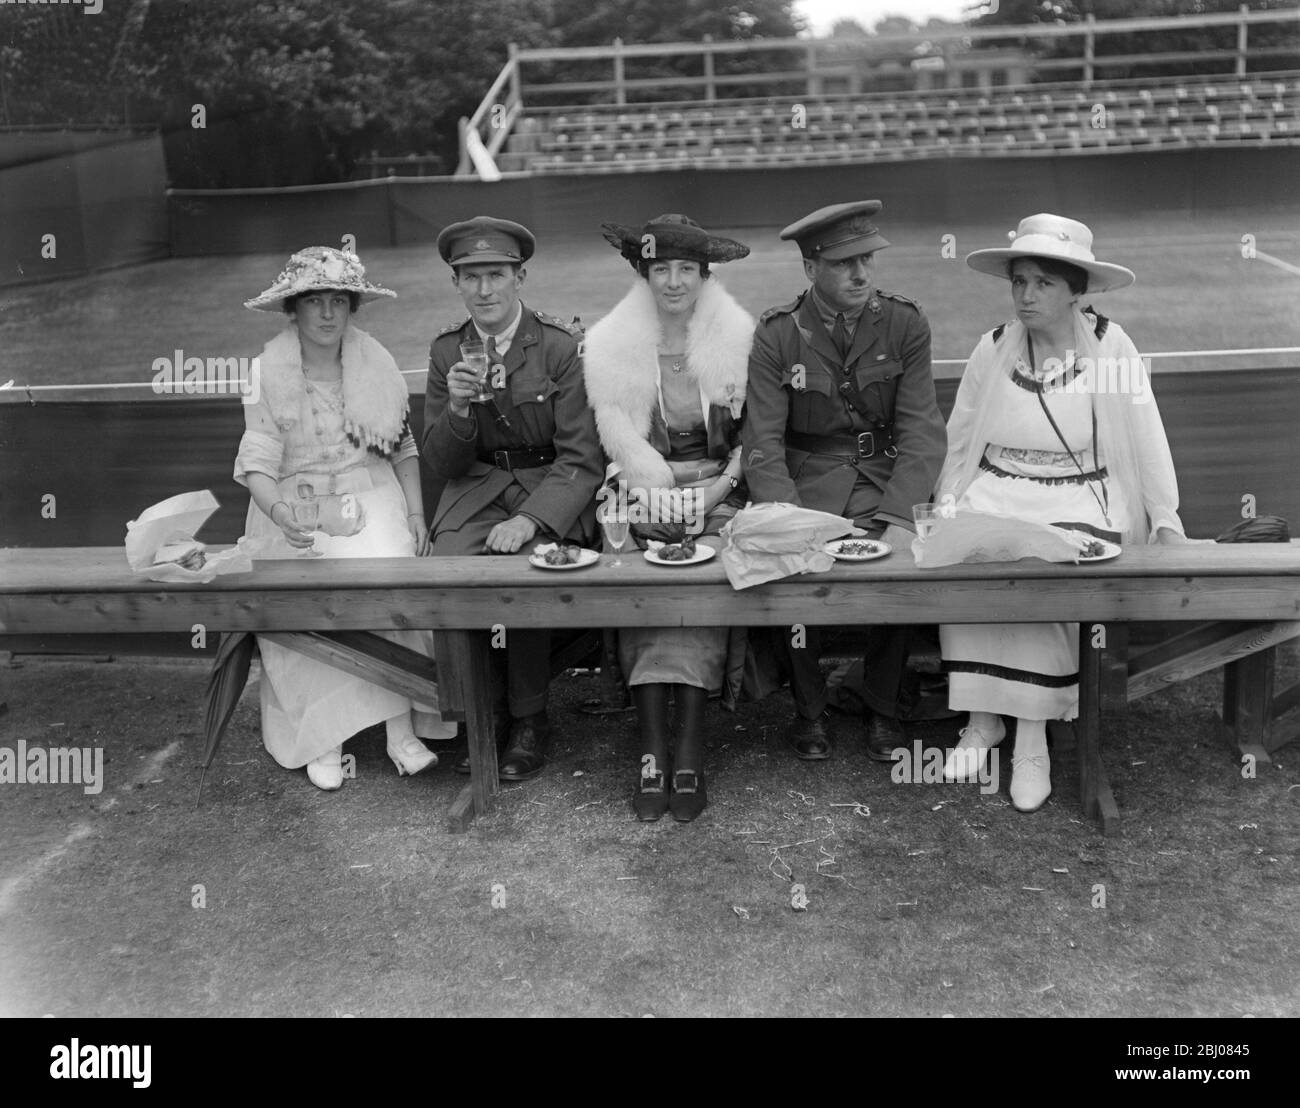 Campionati di tennis in erba a Wimbledon. - un pranzo party. - 19 giugno 1928 Foto Stock